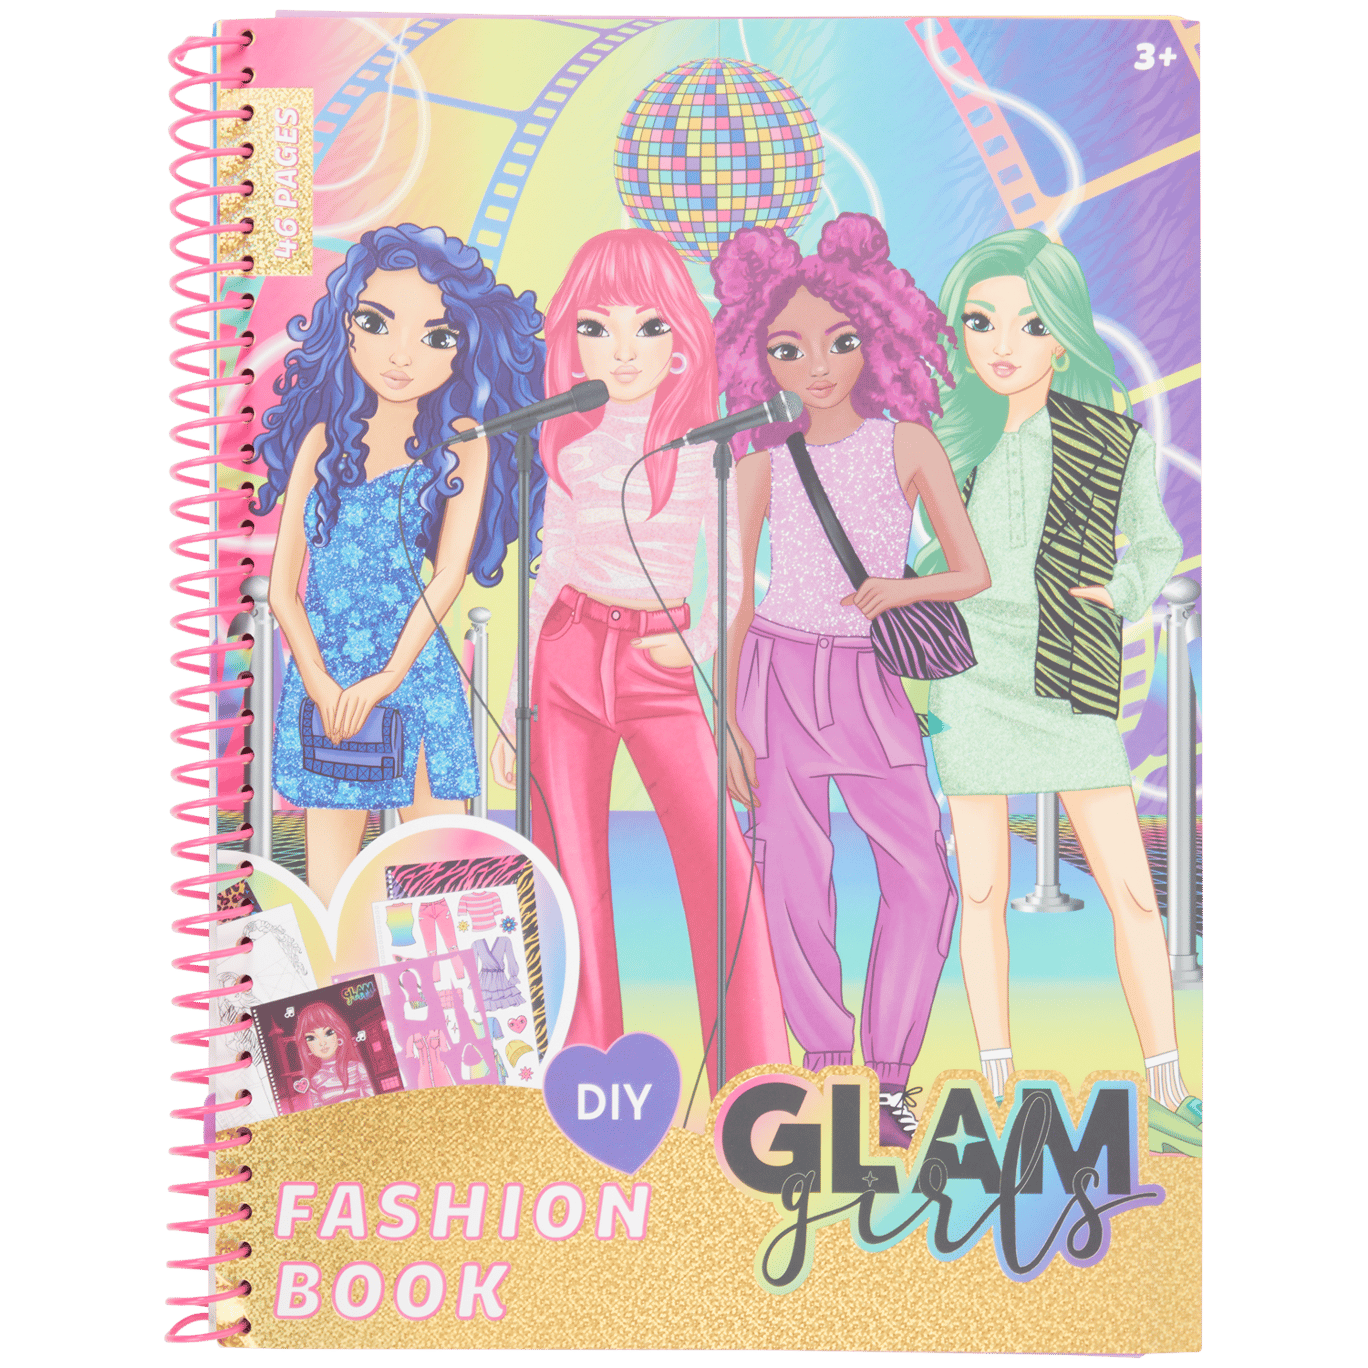 Libro de moda Glam Girls